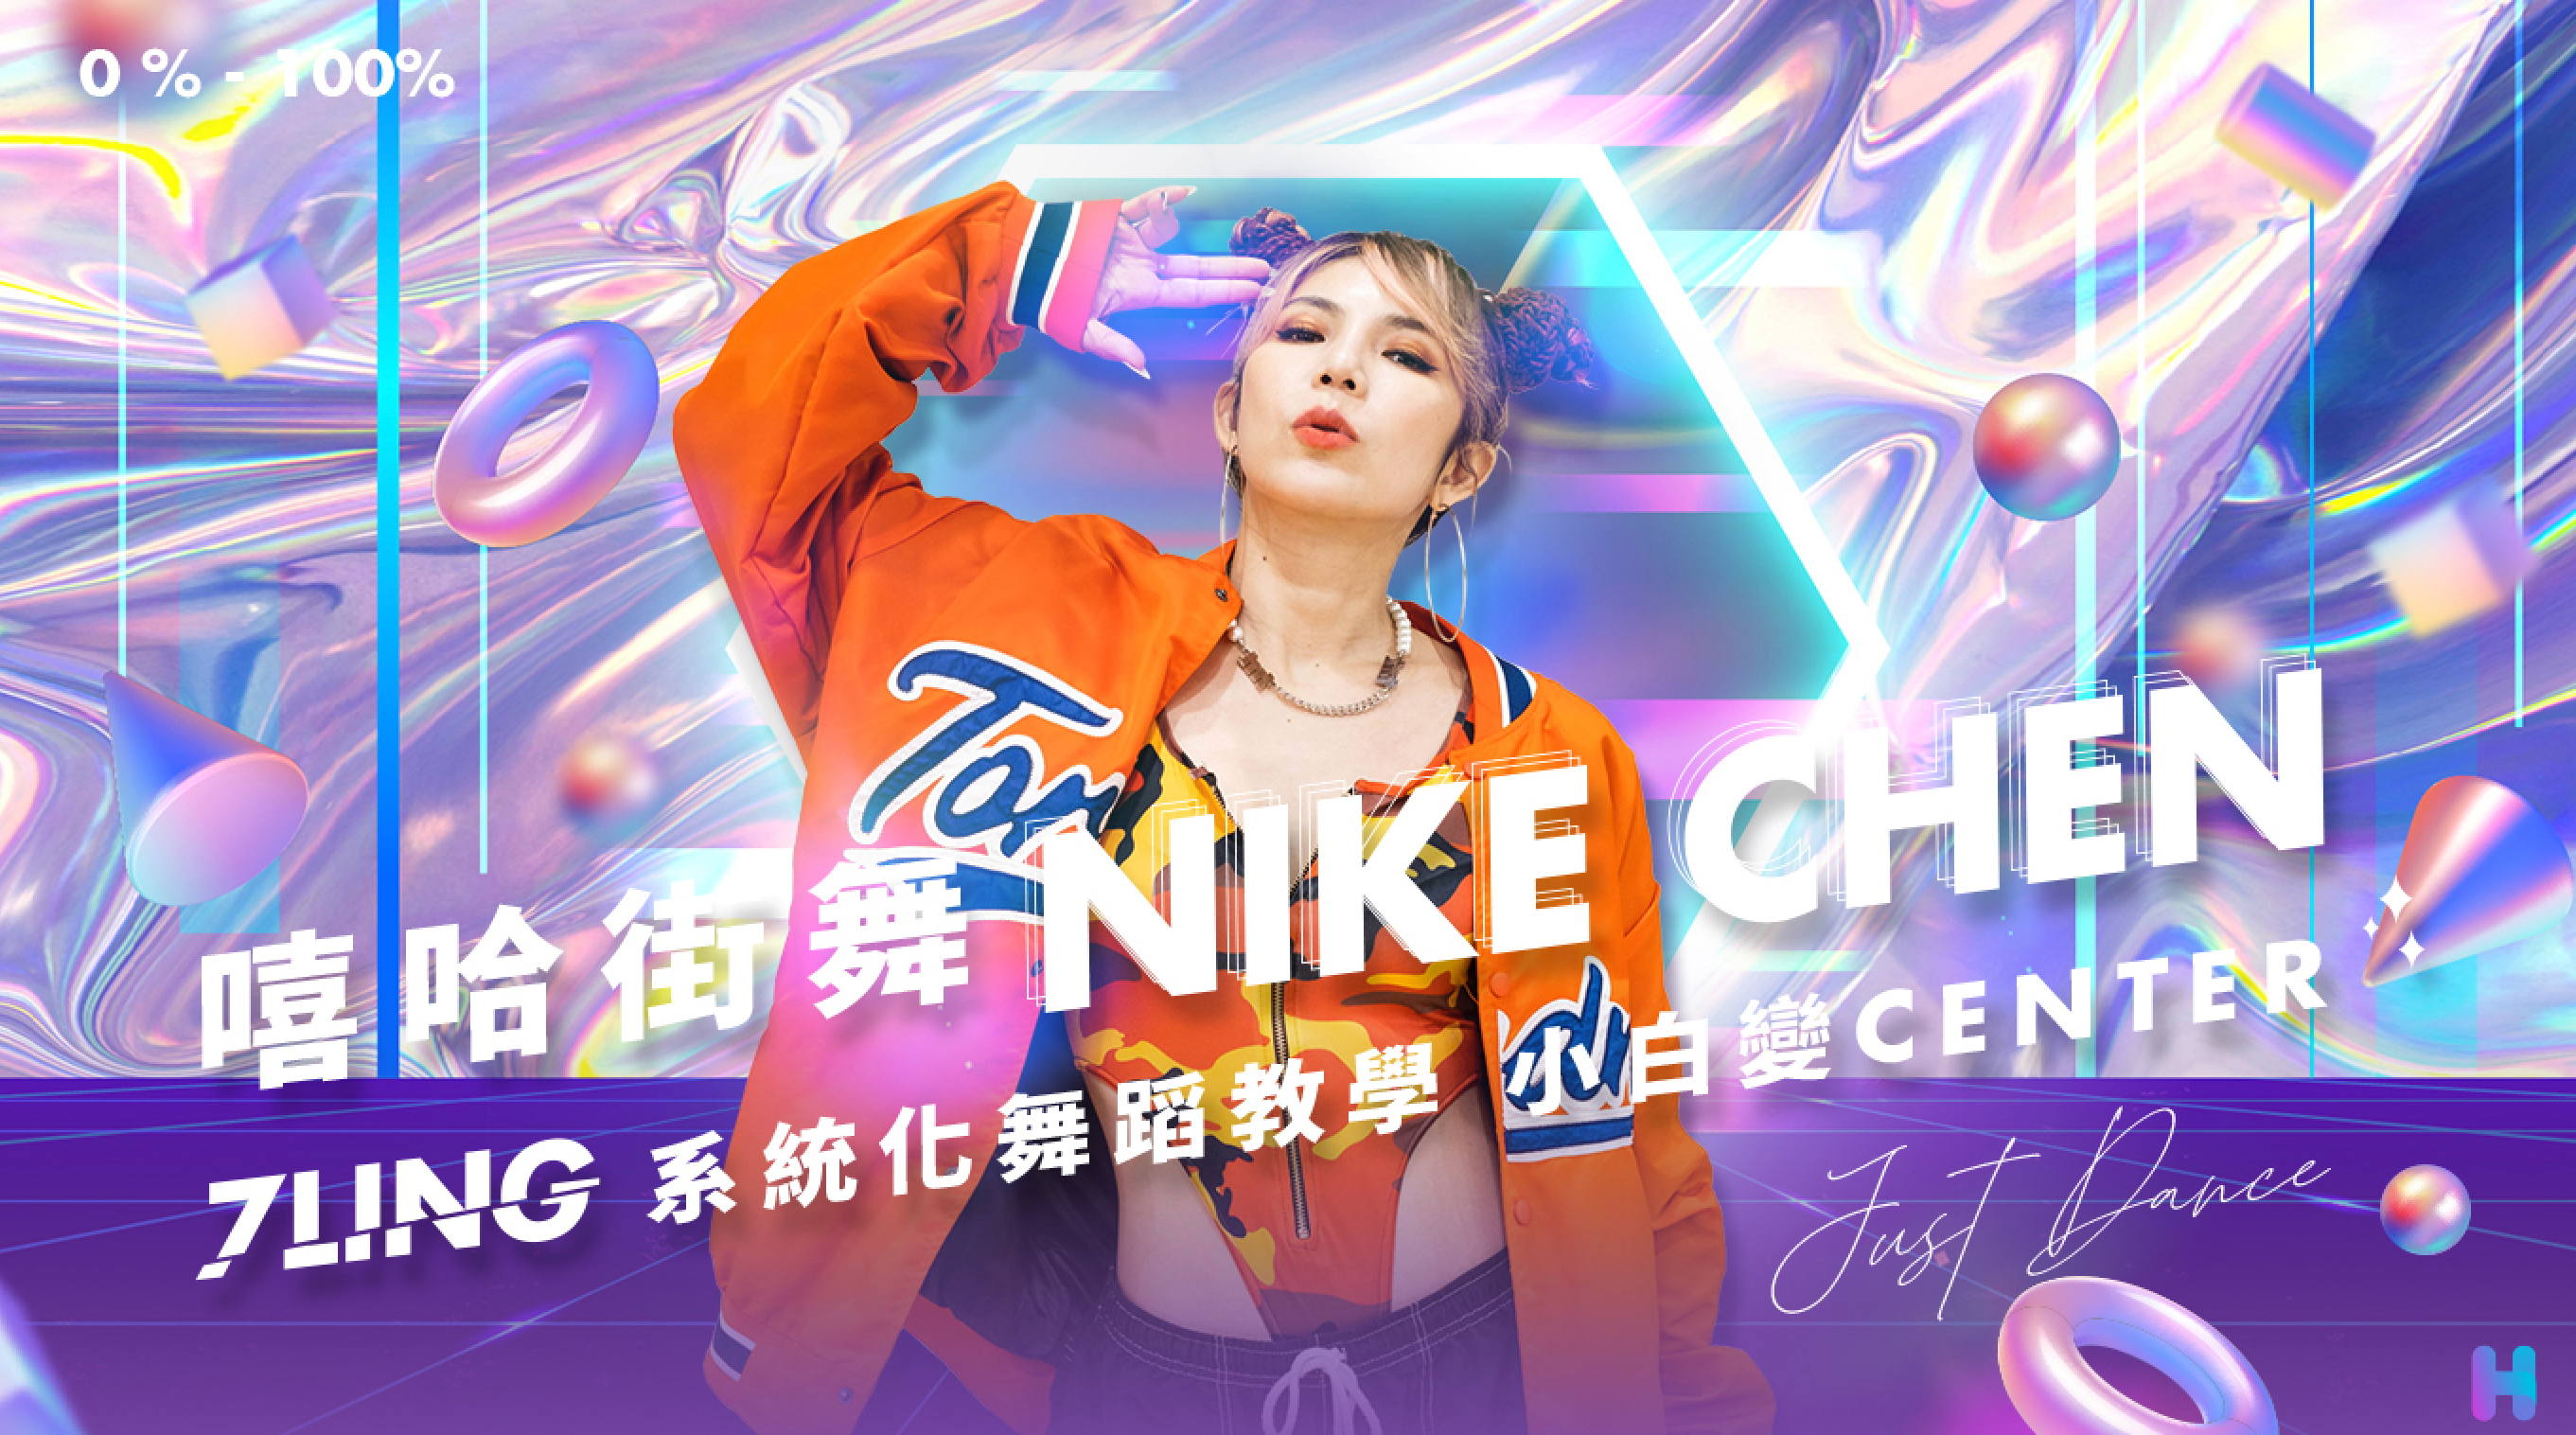 嘻哈街舞Nike Chen | 系統化舞蹈教學小白變Center